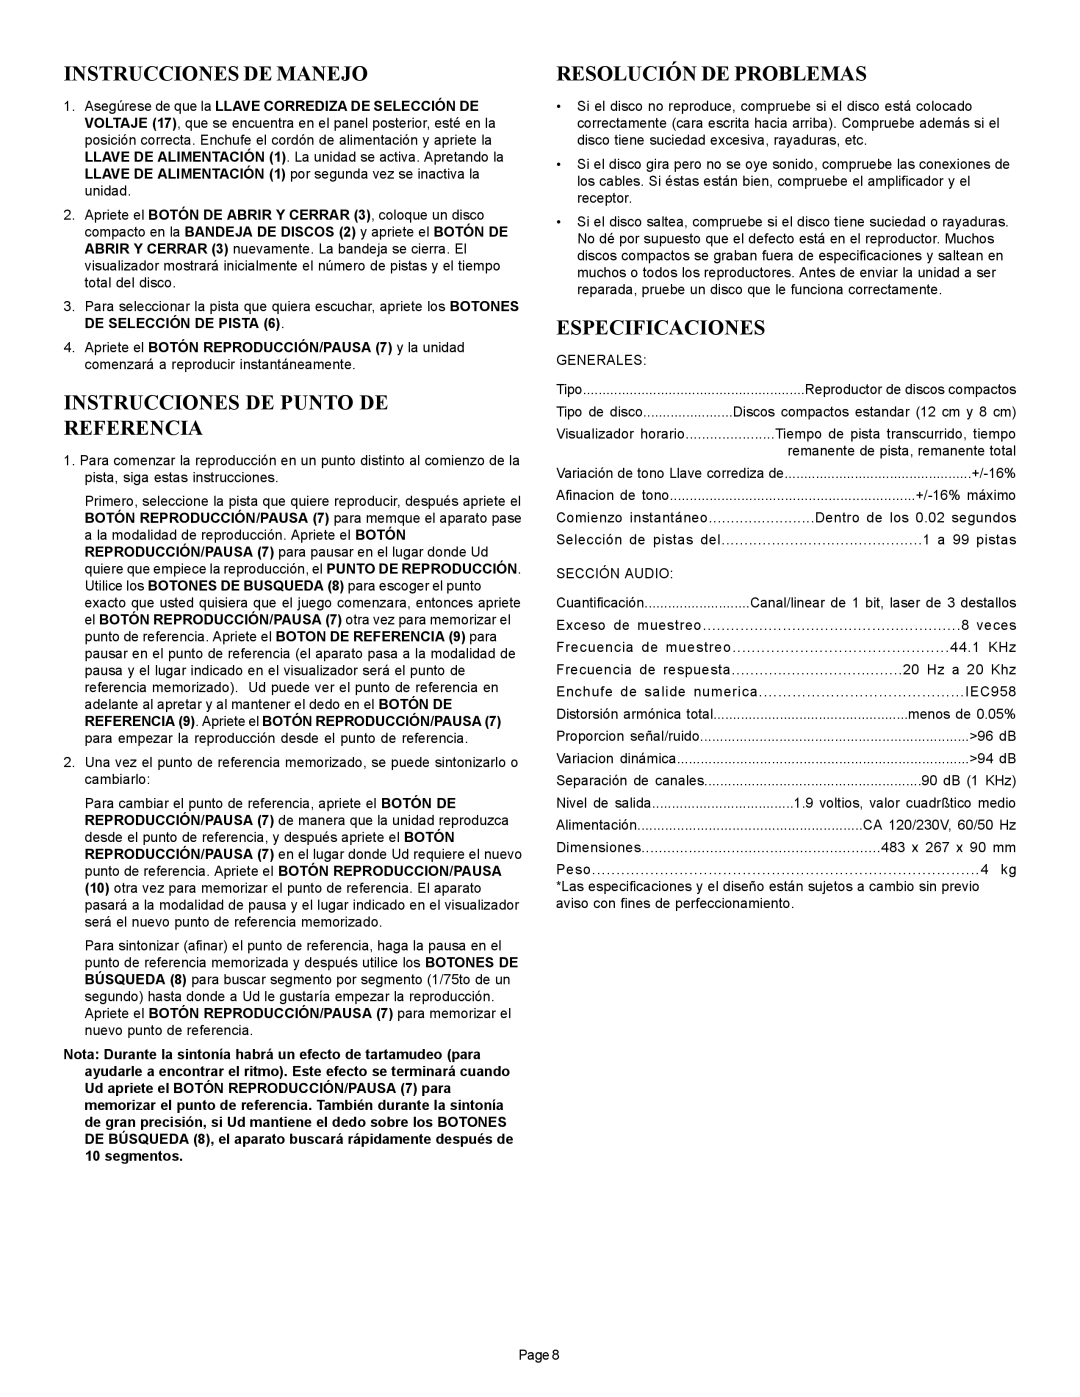 Gemini CD-110 Instrucciones De Manejo, Instrucciones De Punto De Referencia, Resolución De Problemas, Especificaciones 